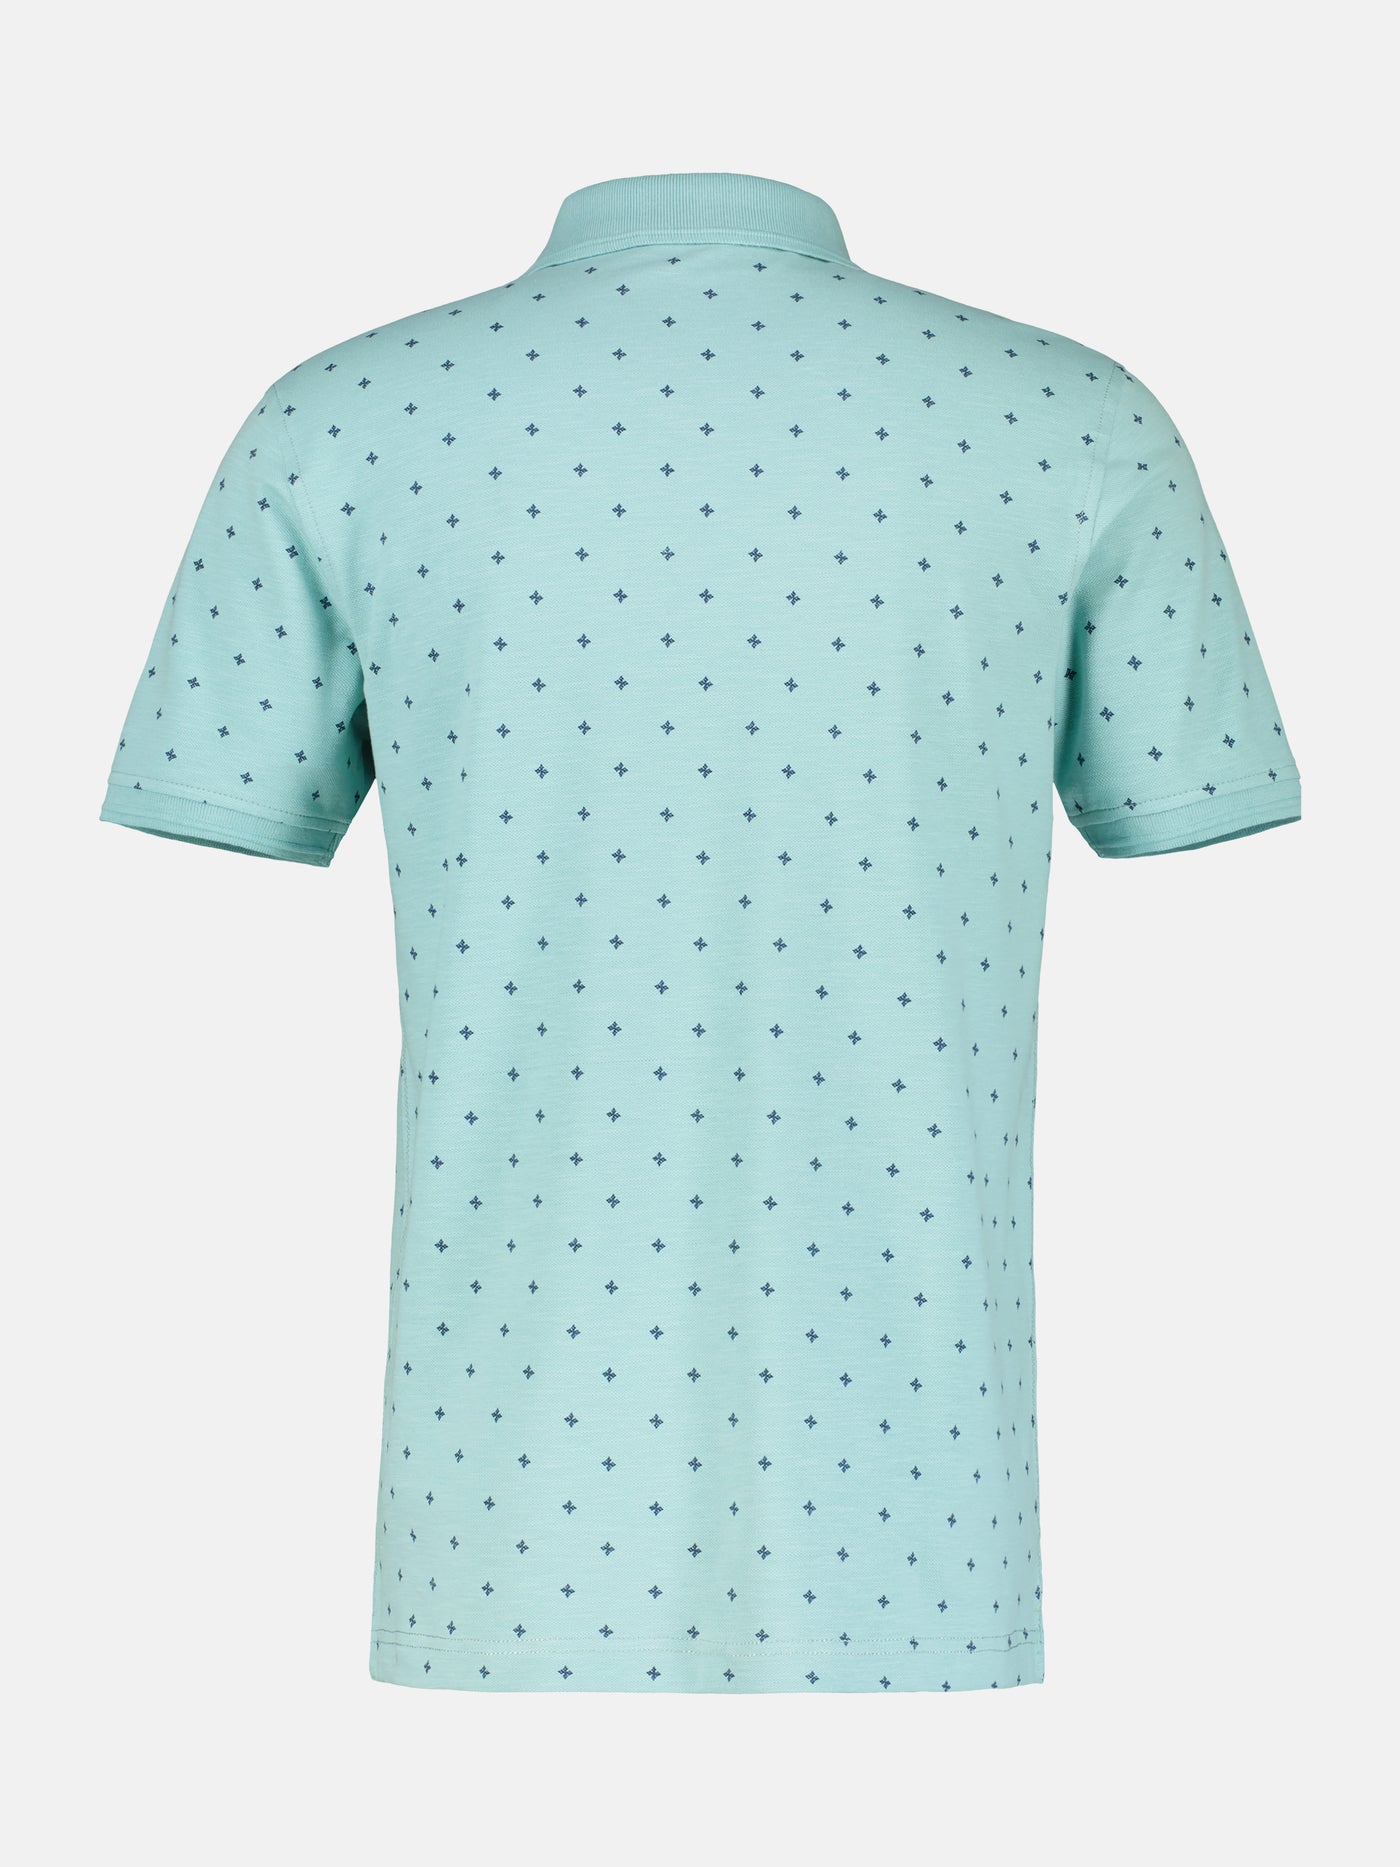 Polo shirt with dot print